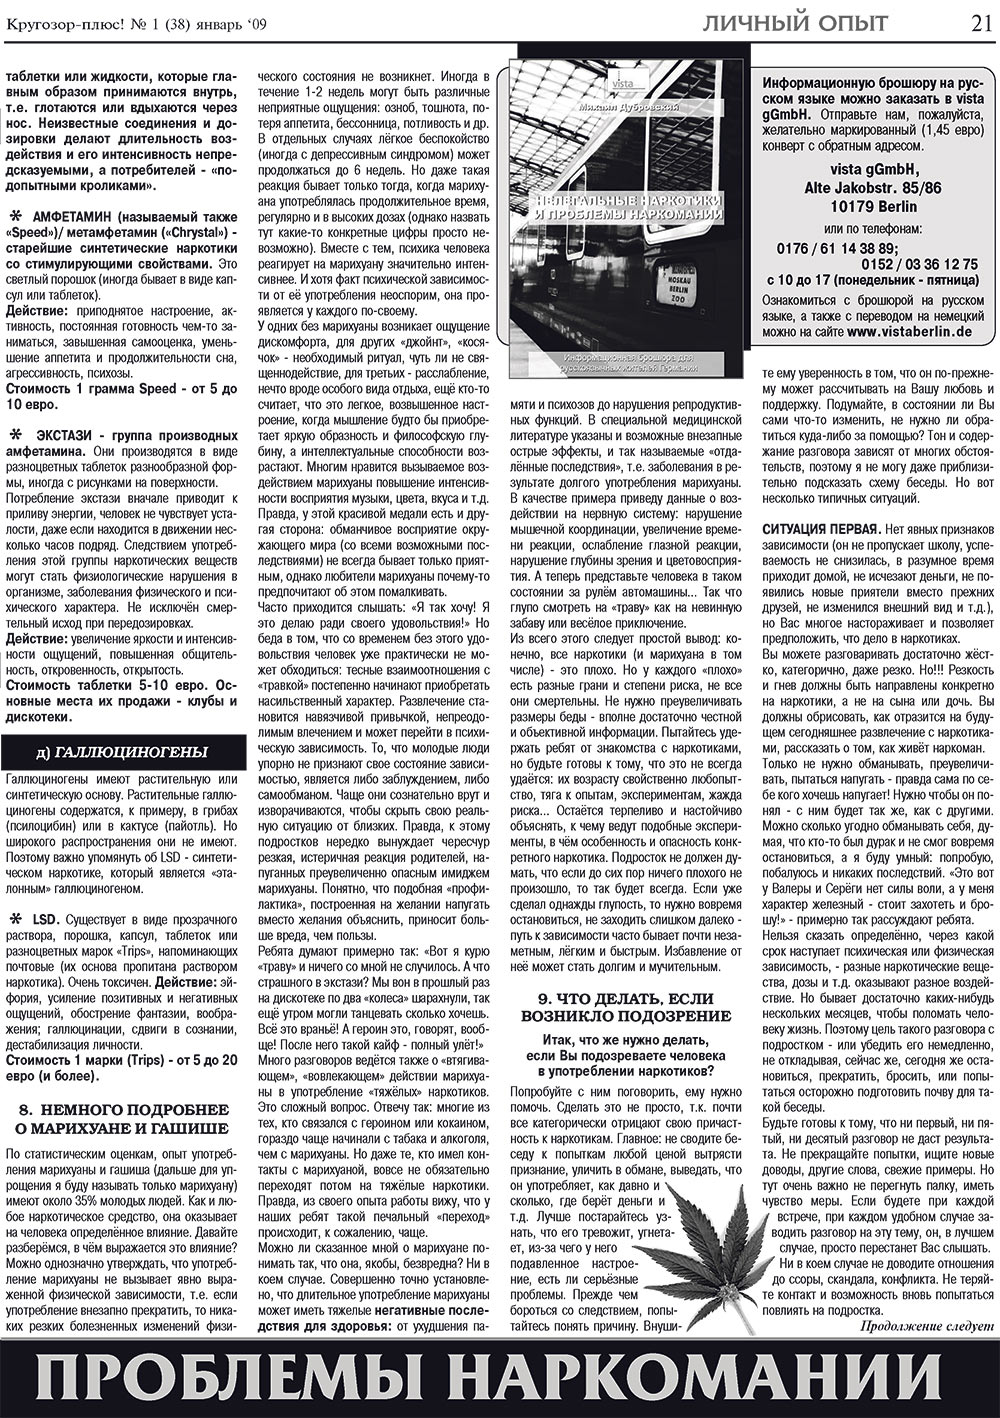 Кругозор плюс!, газета. 2009 №1 стр.21